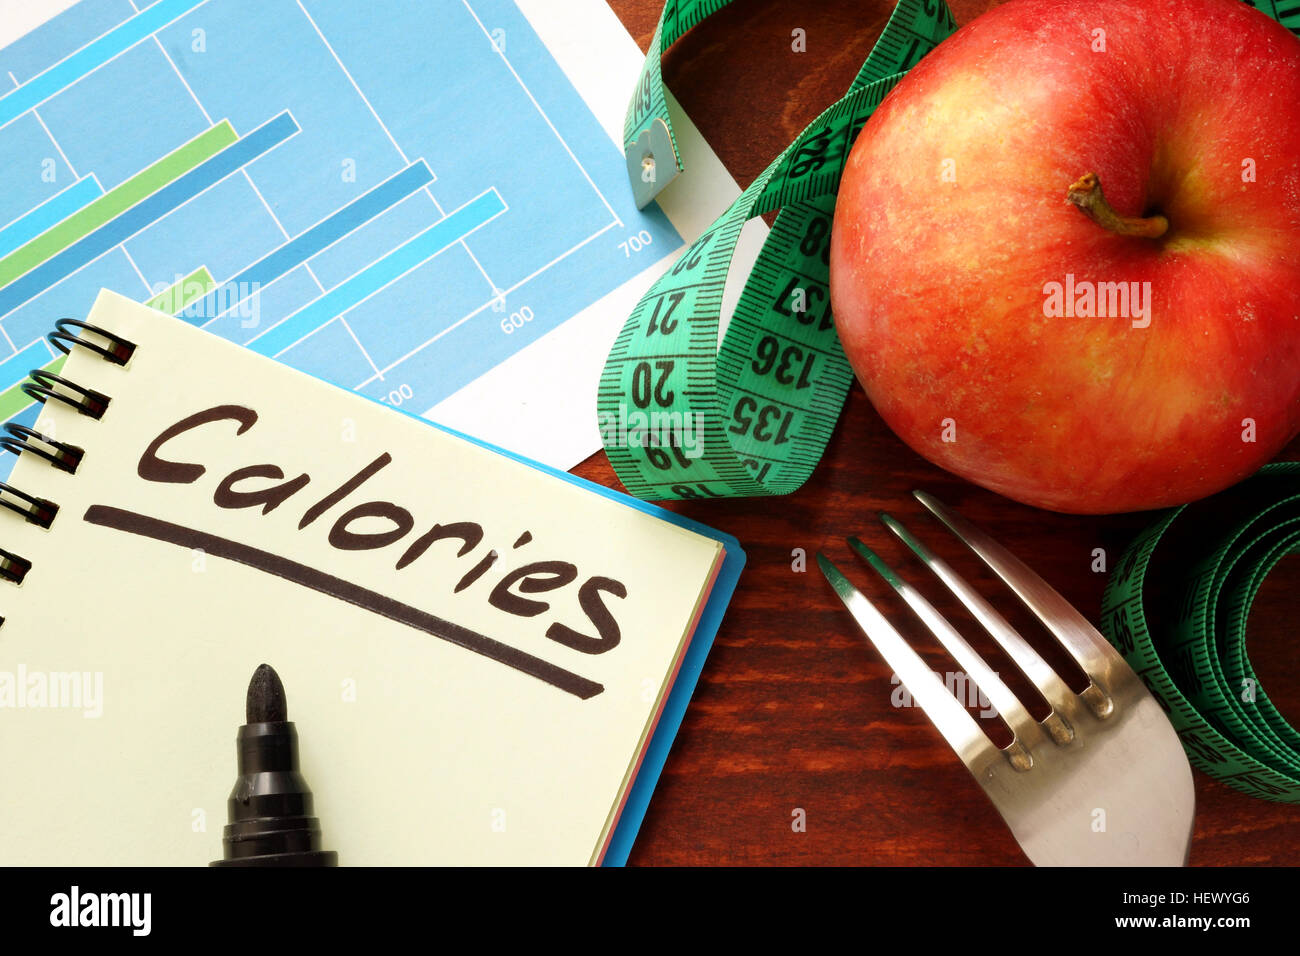 Calorías escrito en un diario. Concepto de contar las calorías. Foto de stock